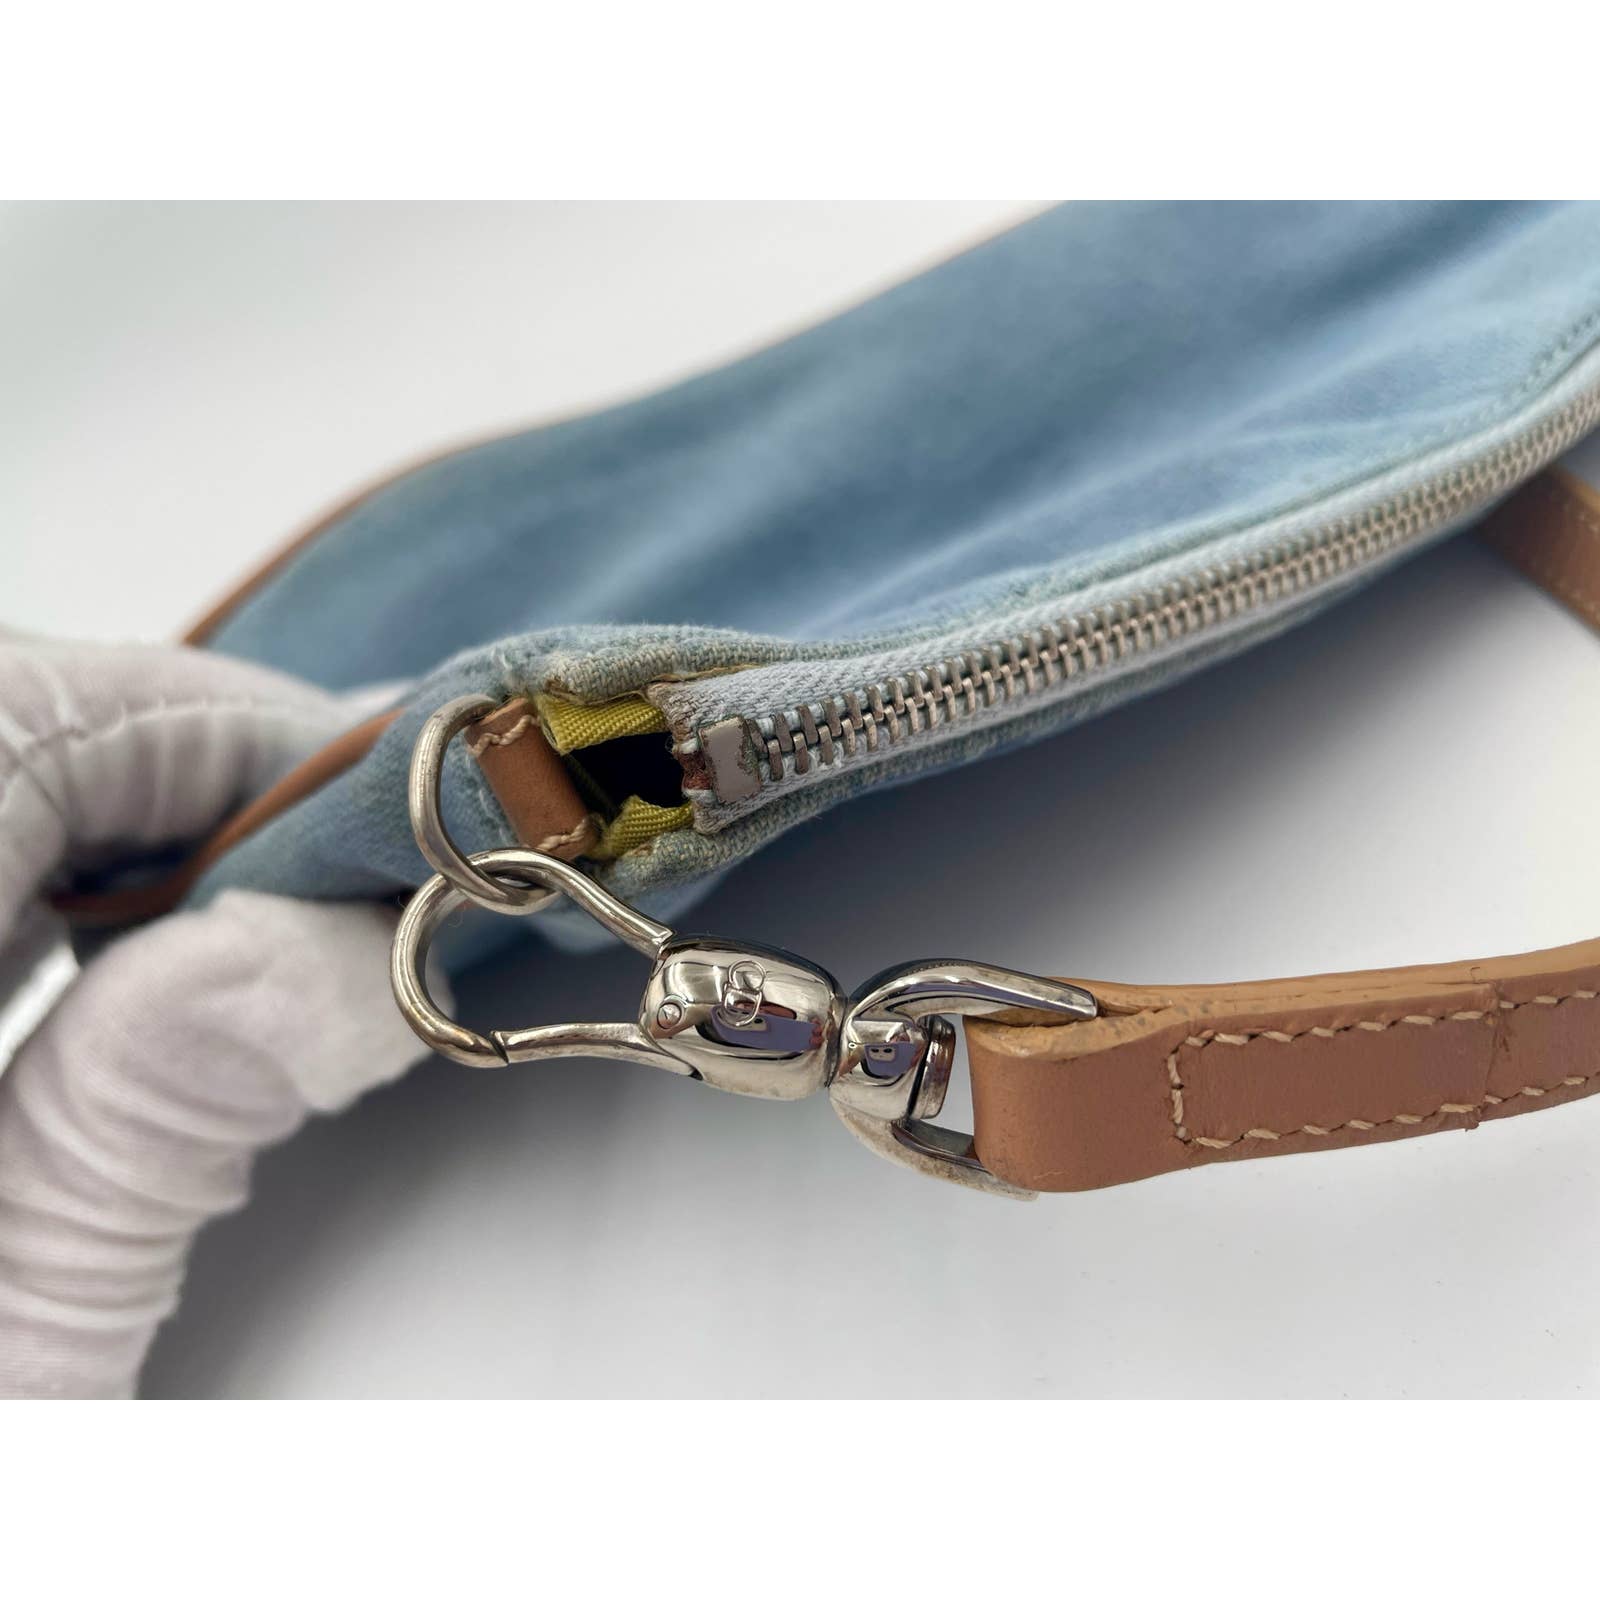 Dior Vintage Denim Saddle Bag - Le Look